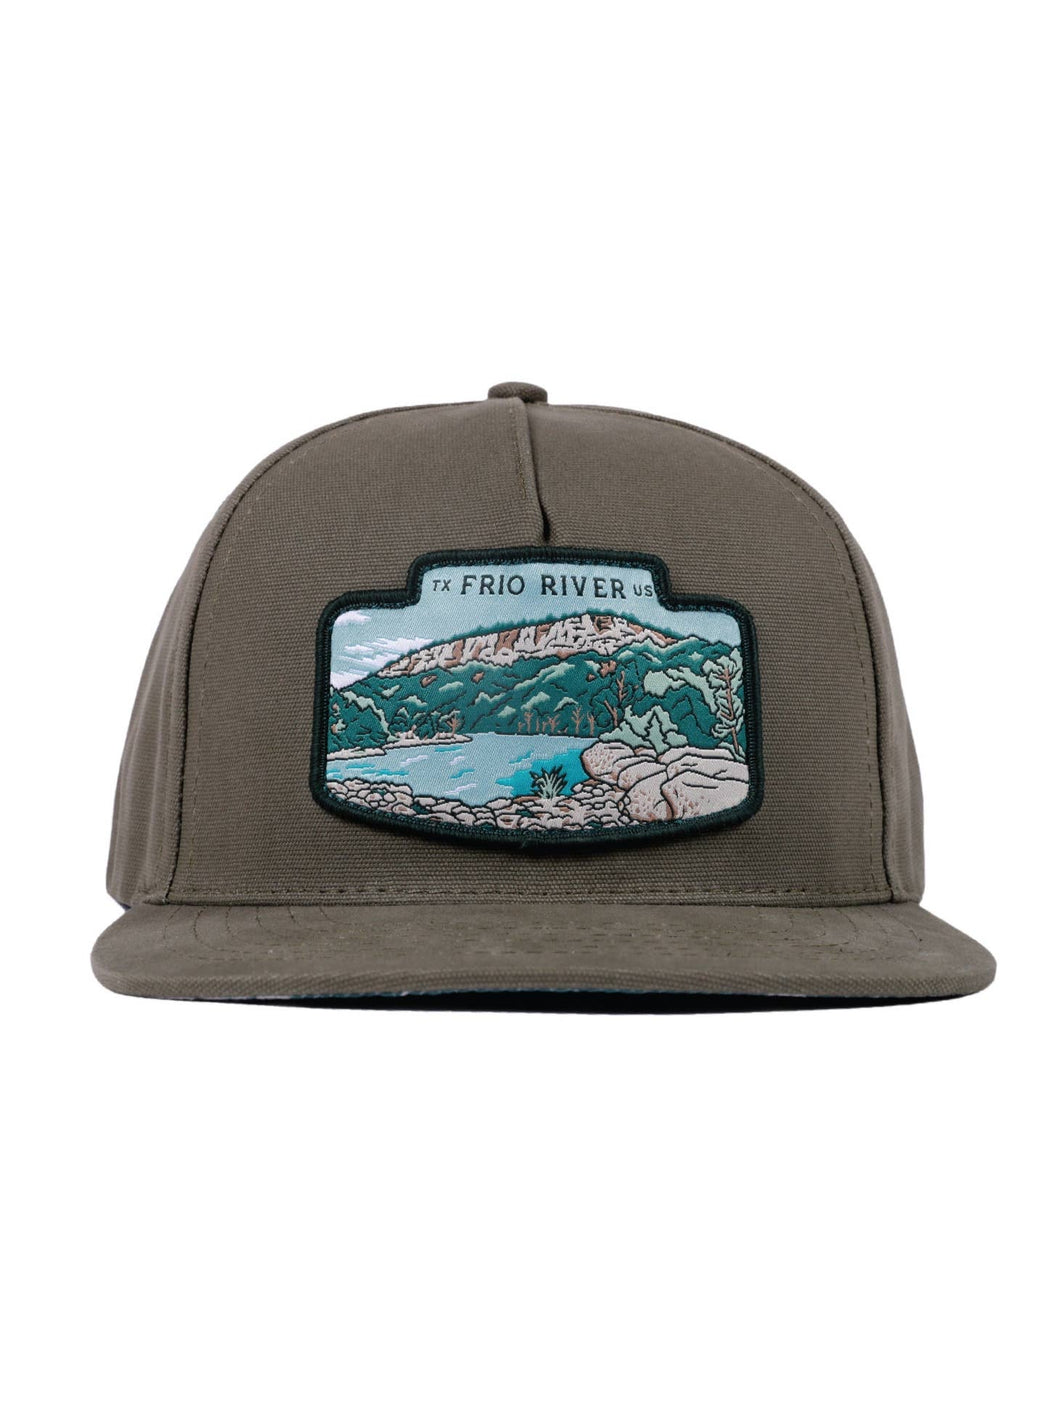 Sendero Provisions Co. | Frio River Hat